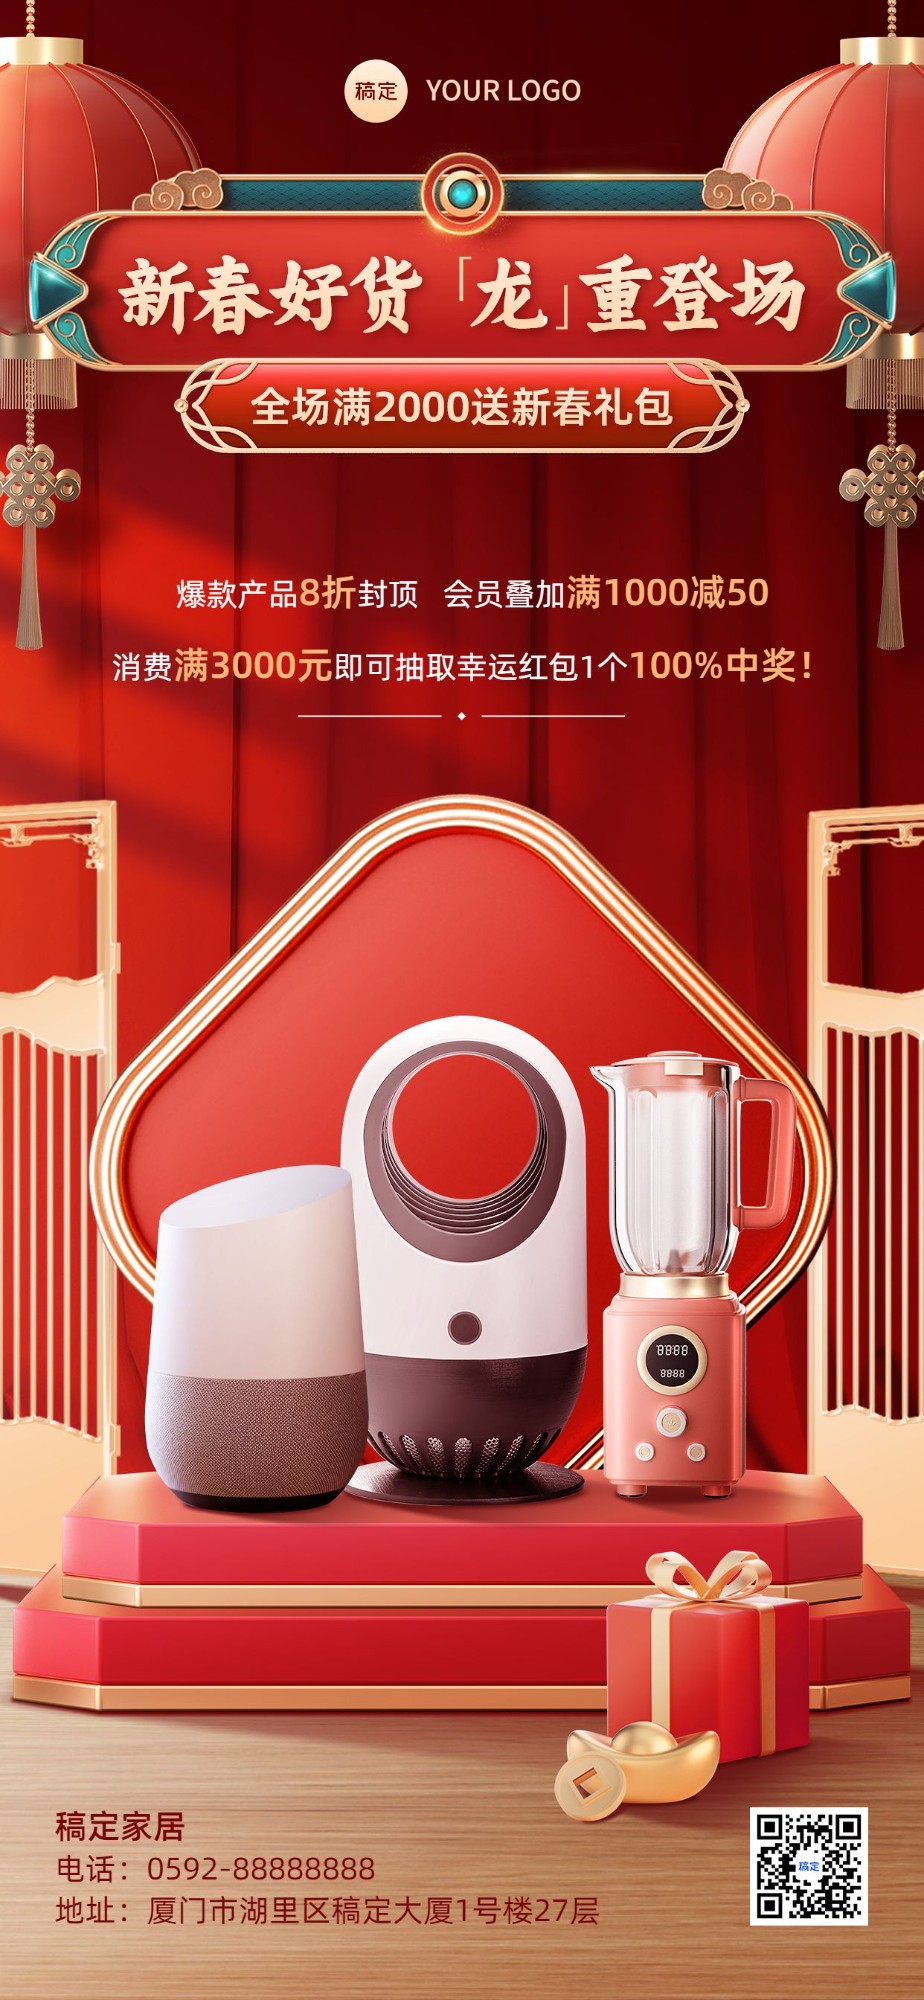 春节小家电产品展示营销喜庆感3D全屏竖版海报预览效果